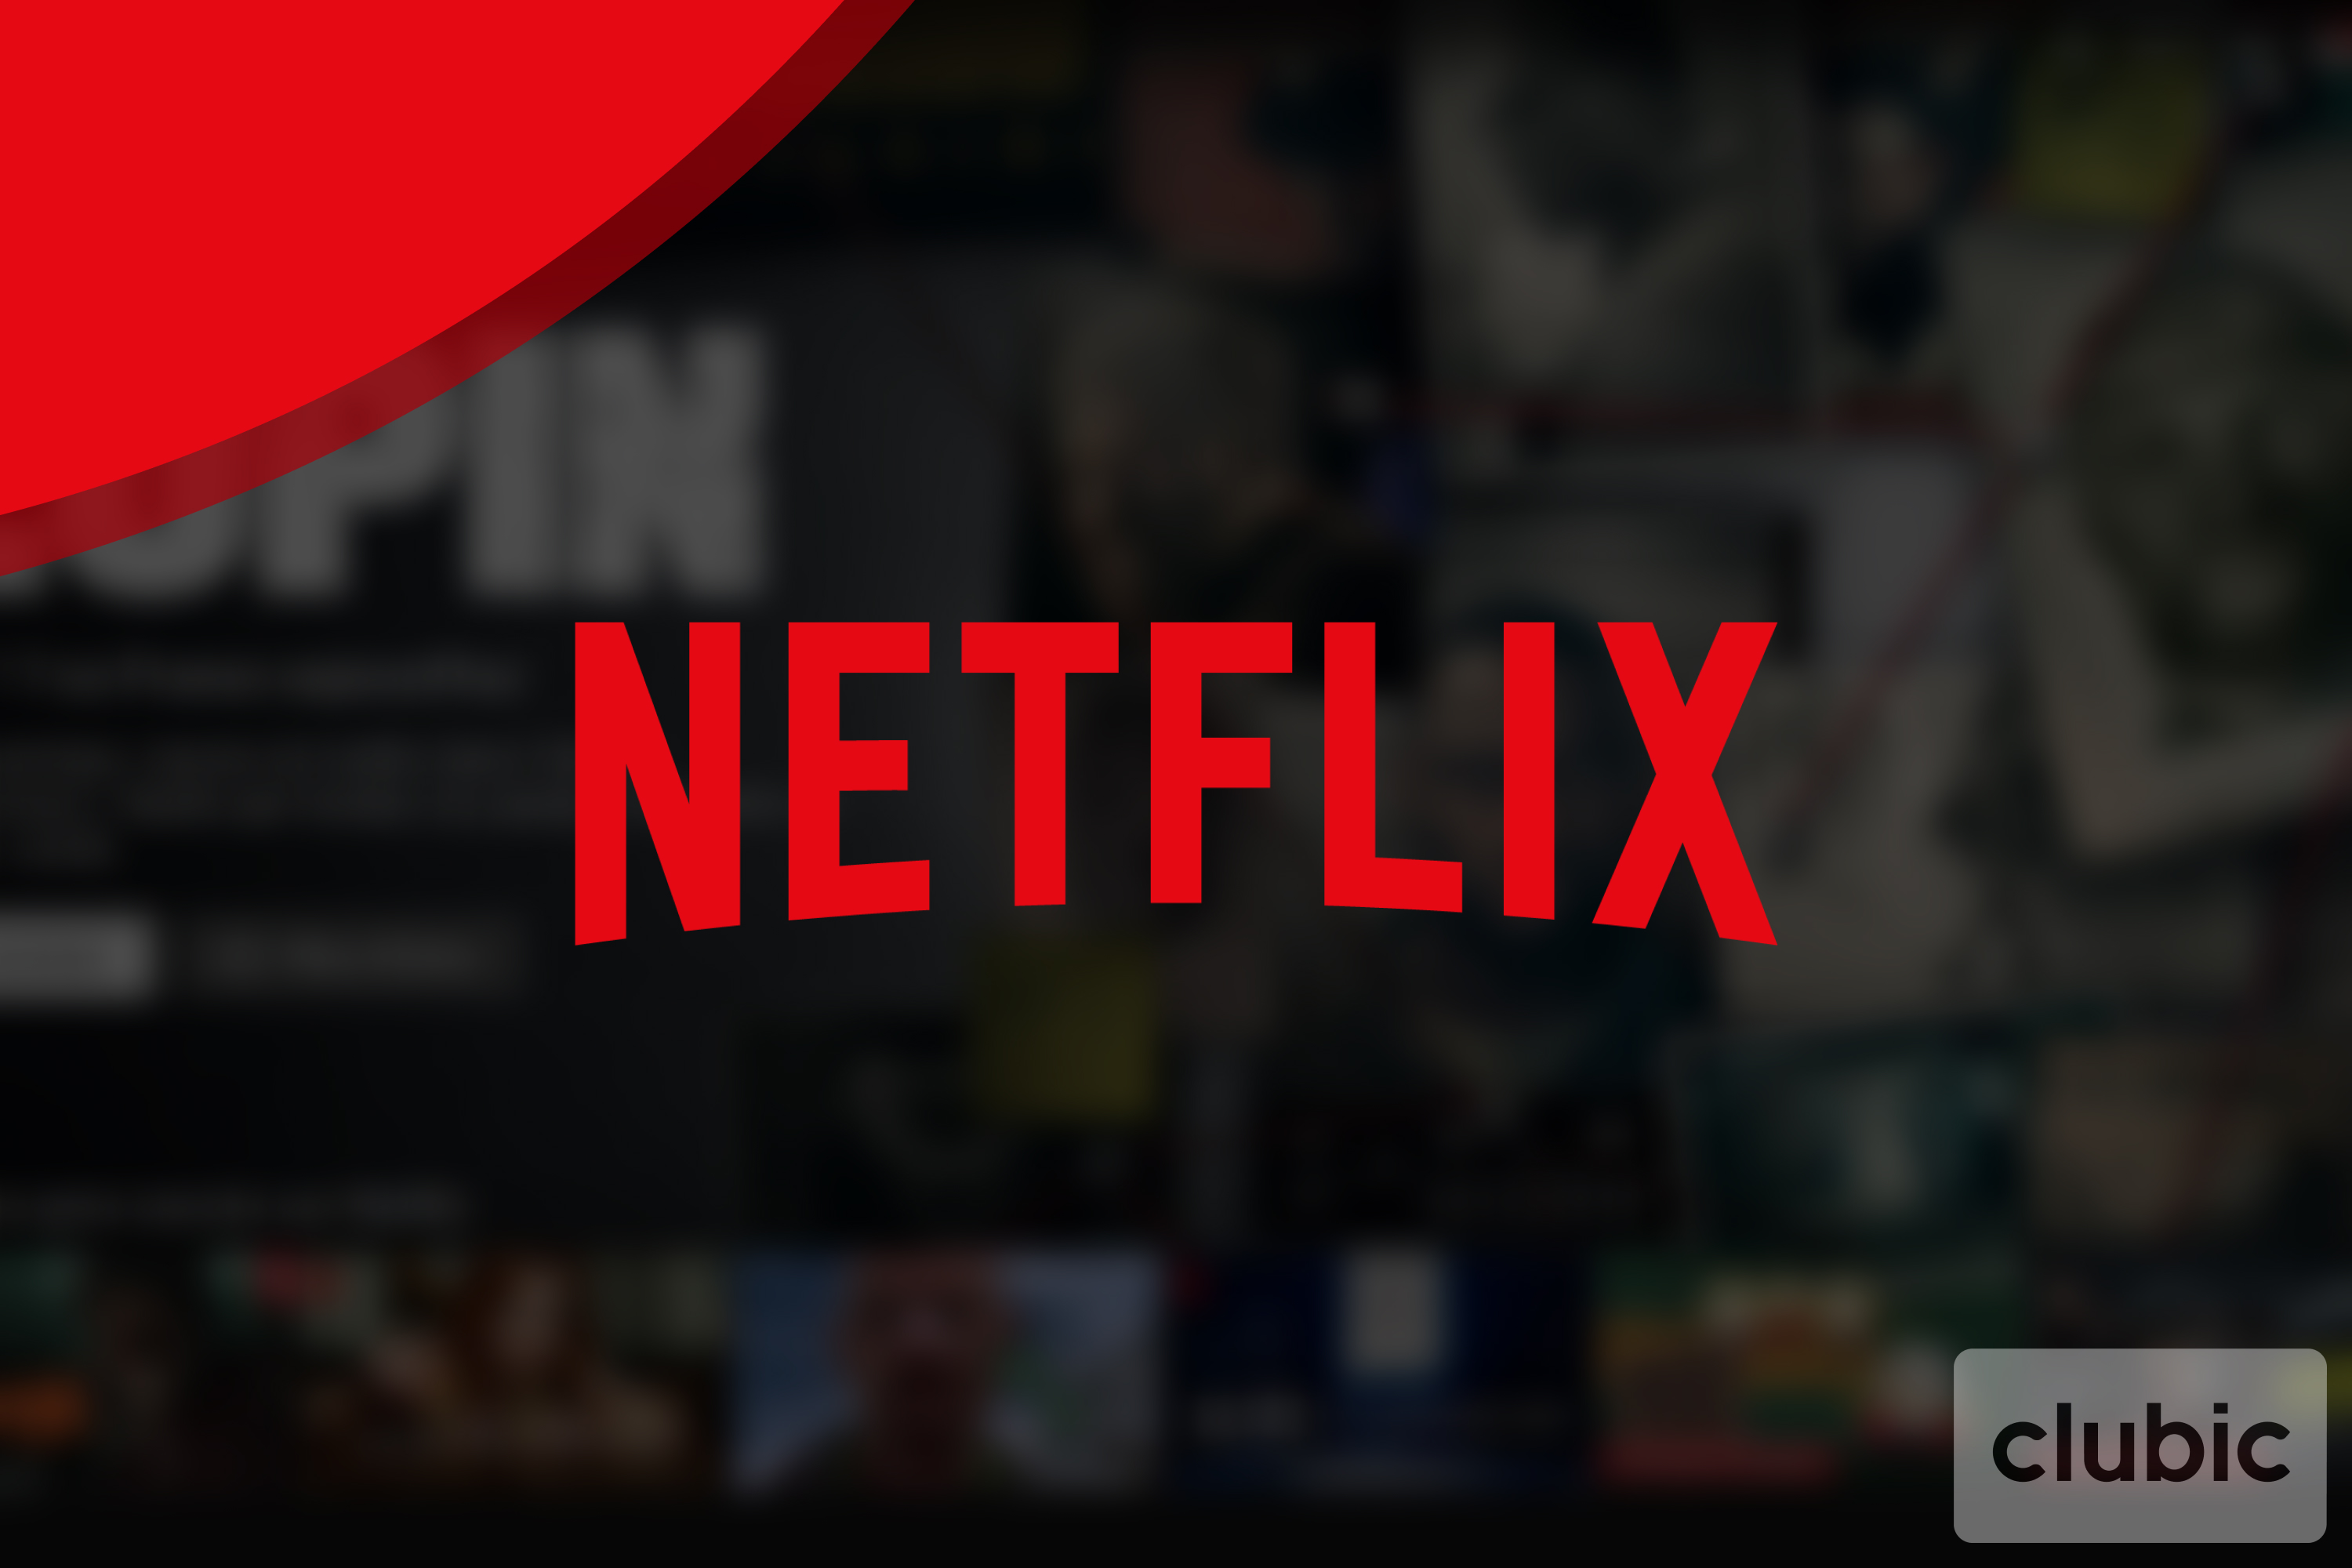 Les 10 films et séries les plus visionnés sur Netflix enfin dévoilés, découvrez-les !